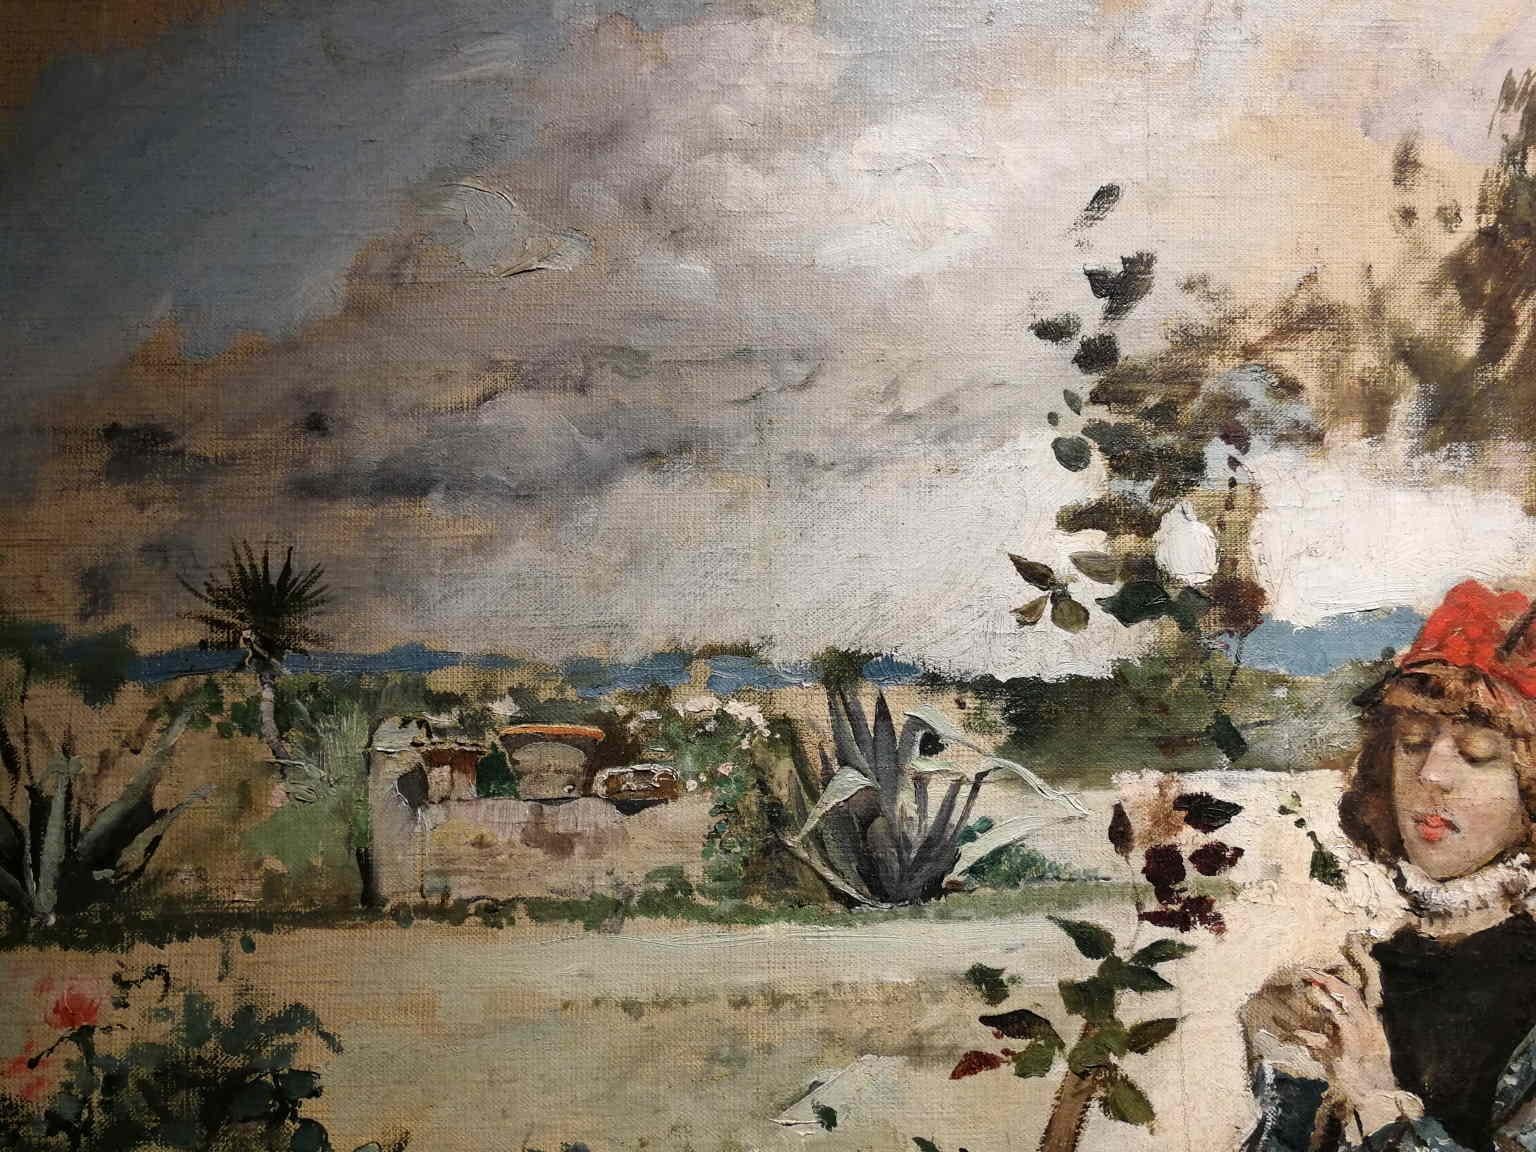 Florentine Signed Gordigiani Portrait Landscape Painting 19th century oil canvas For Sale 6